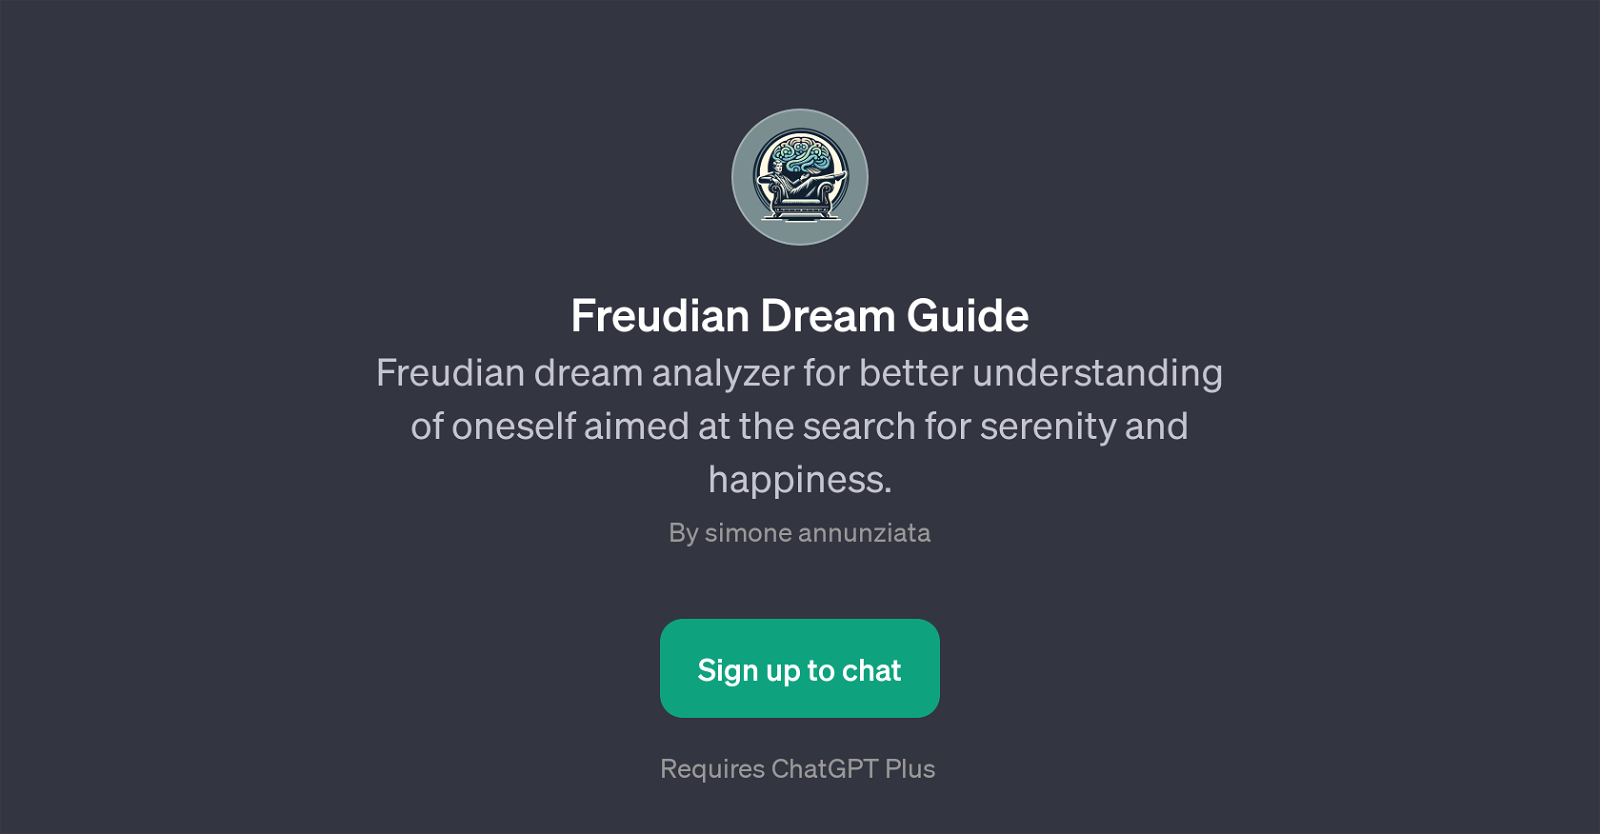 Freudian Dream Guide website